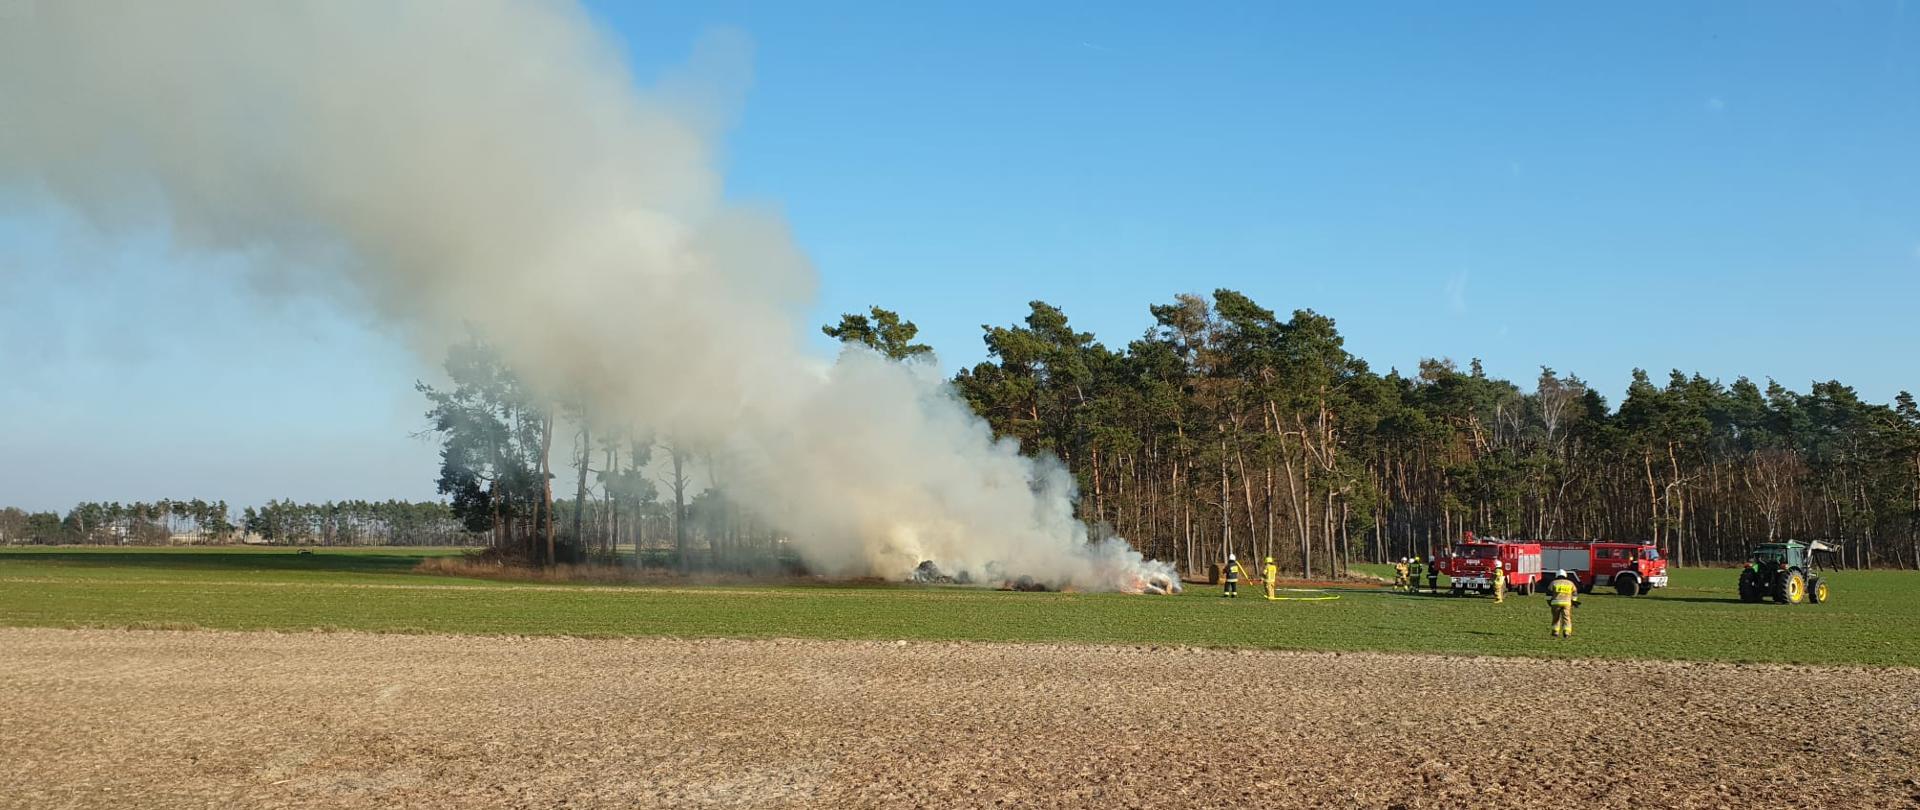 Na zdjęciu palące się baloty słomy na polu w oddali samochody gaśnicze oraz ciągnik i ratownicy podczas działań